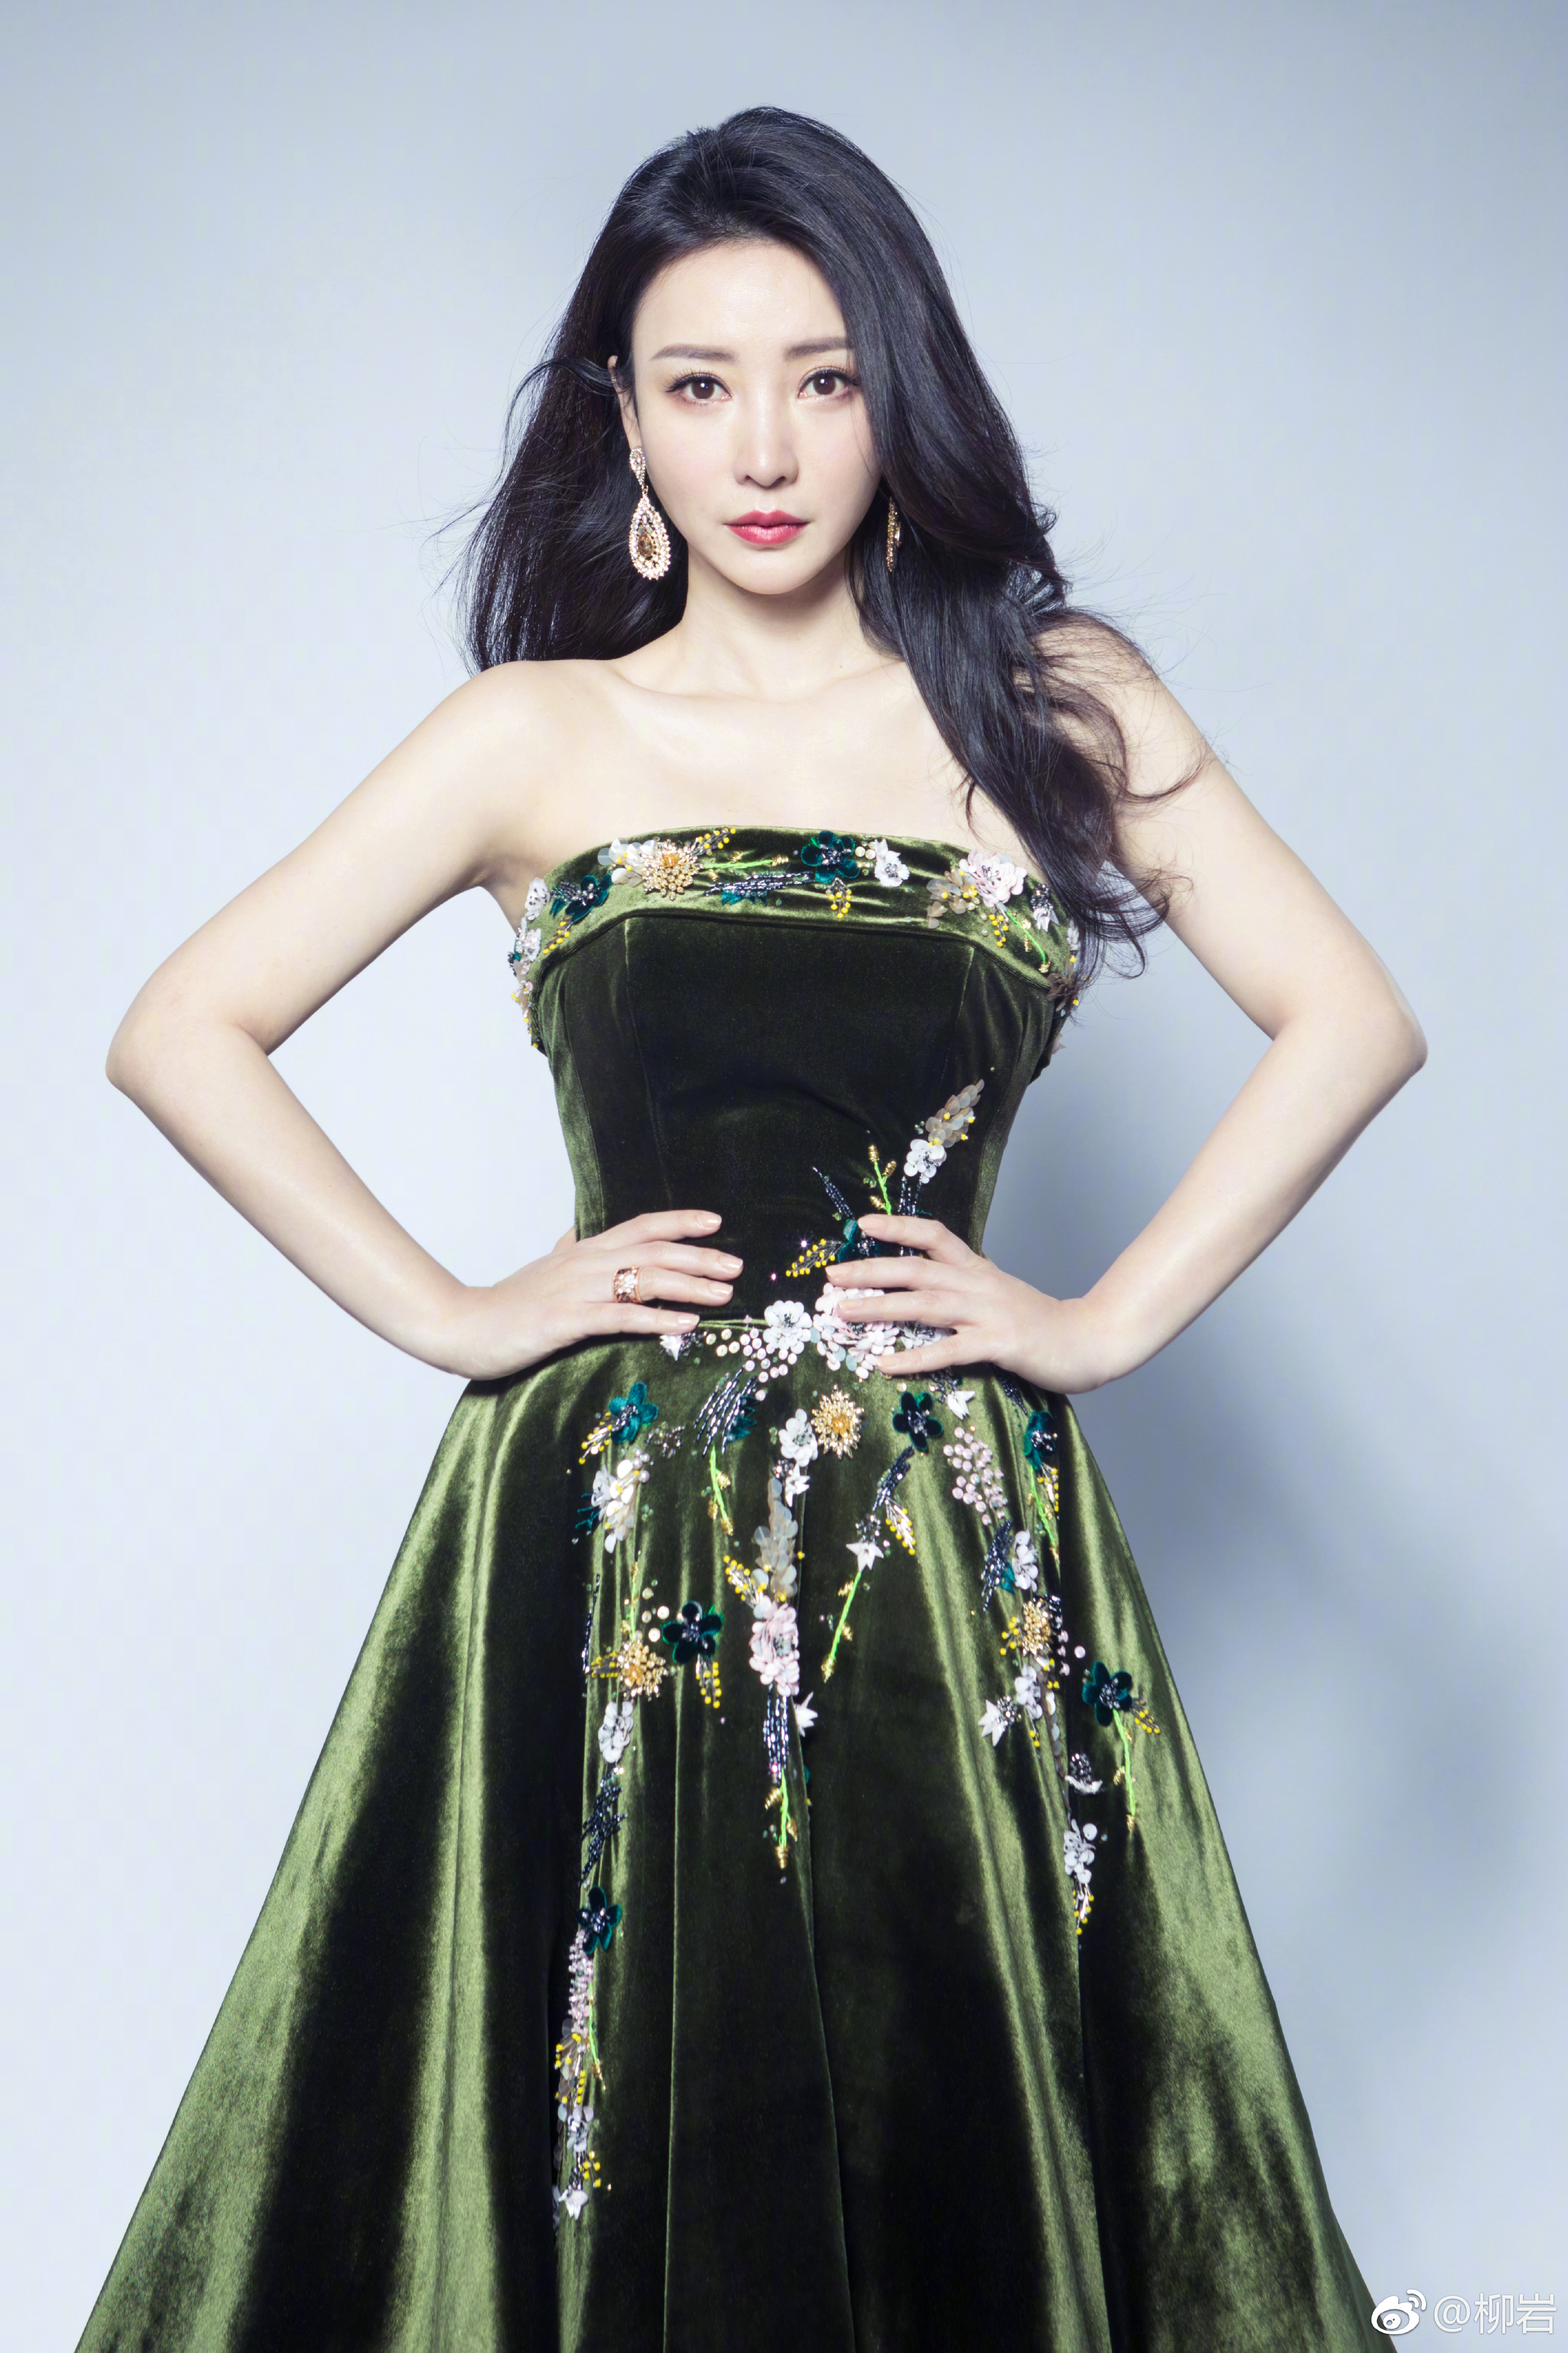 Liuyan Chinese Green Dress Looking At Viewer Black Hair Red Lipstick Women Model Brunette Hands On H 3344x5017